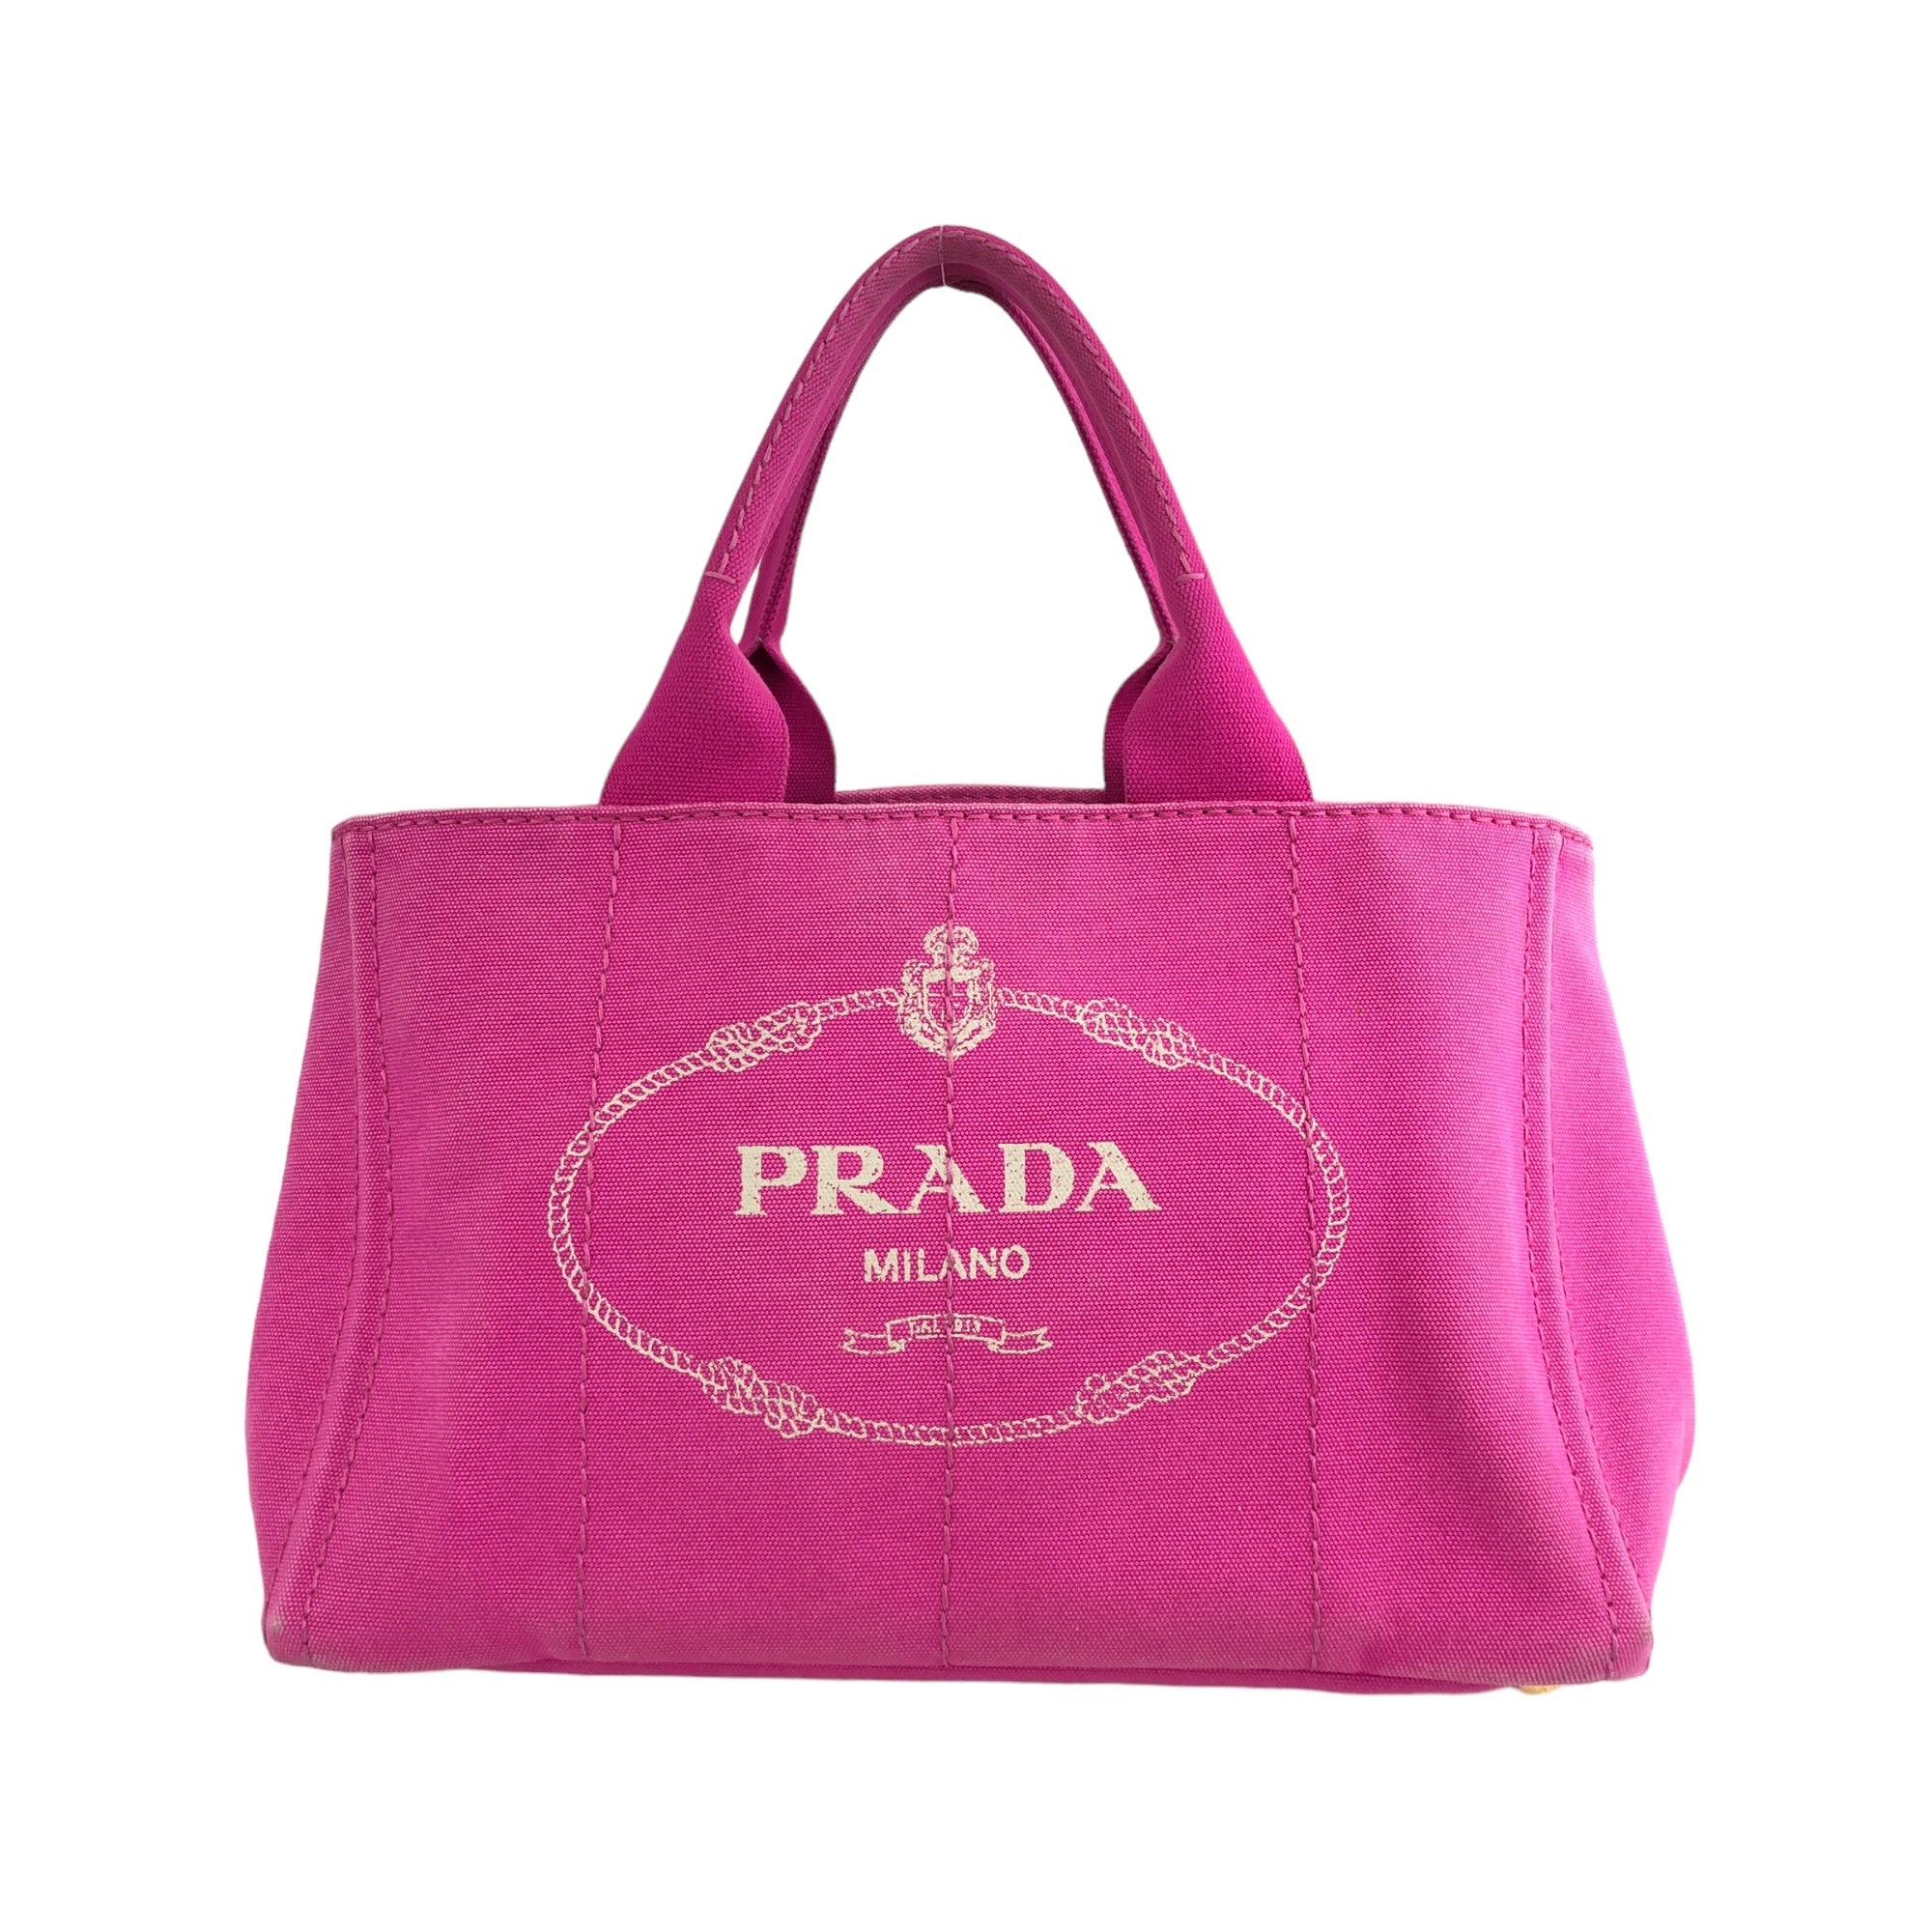 PRADA Canapa Logo Canvas Handbag Pink Vintage tutc24